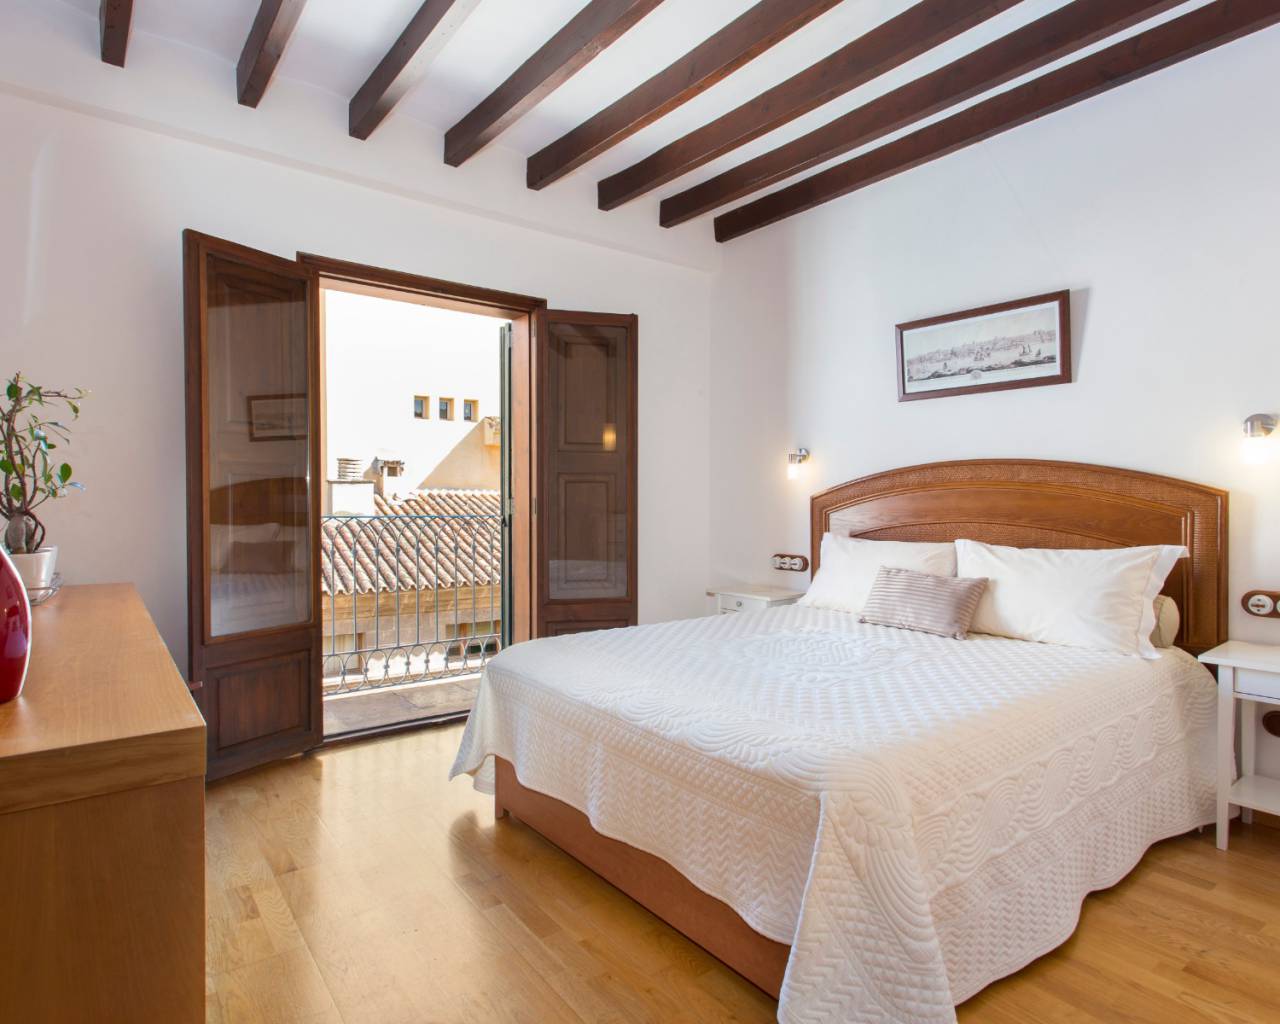 Palma De Mallorca property for rent-estate agents in Mallorca